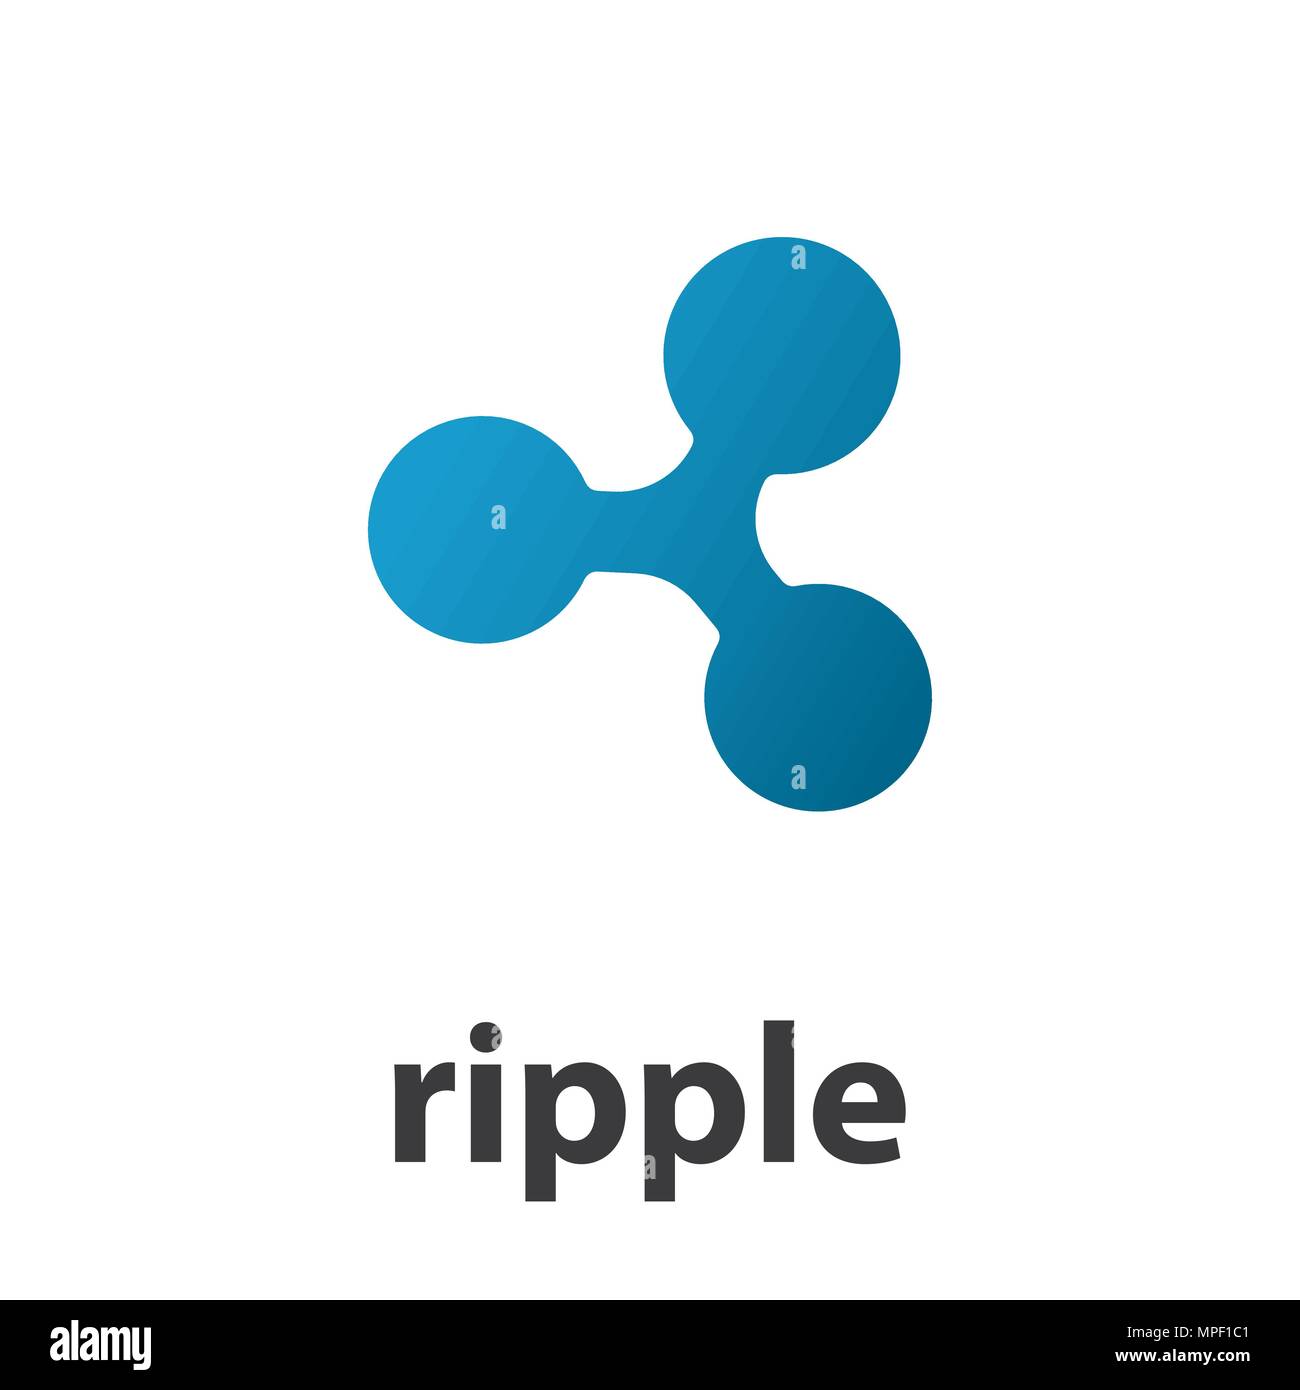 Ripple symbol illustration Stock Vector